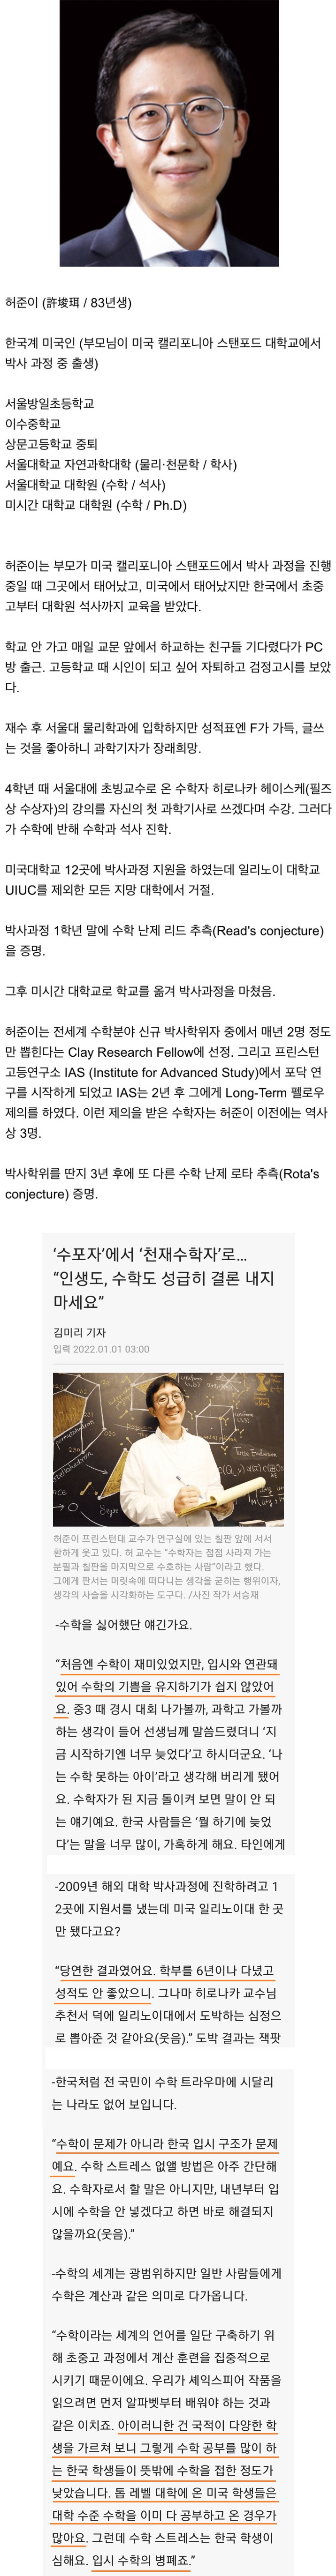 필즈상 수상자 허준이의 한국 수학 교육 비판